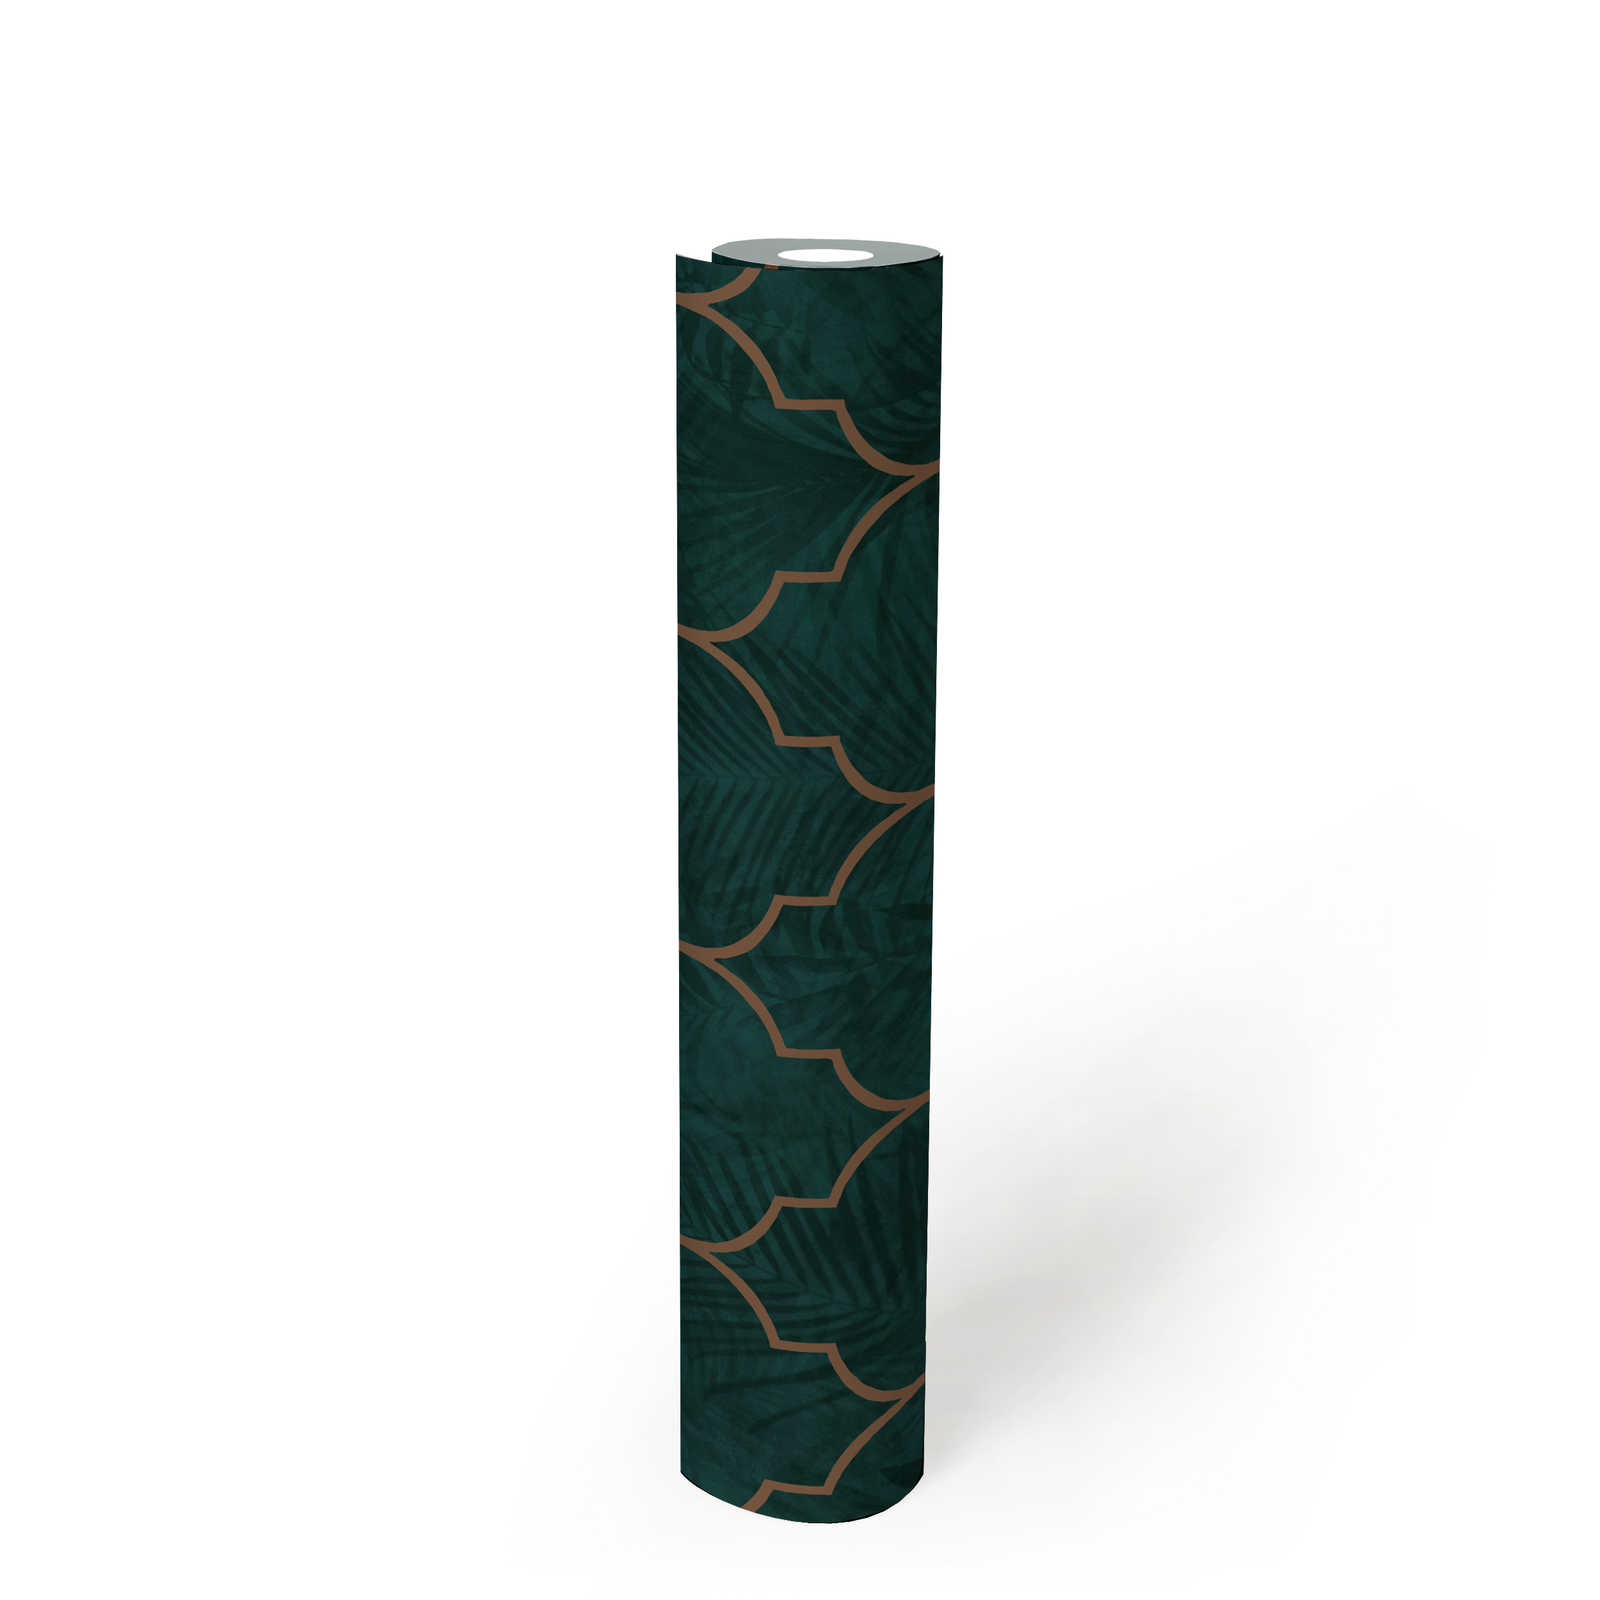             papier peint en papier carrelage avec ornement et motif de feuilles - vert, turquoise, marron
        